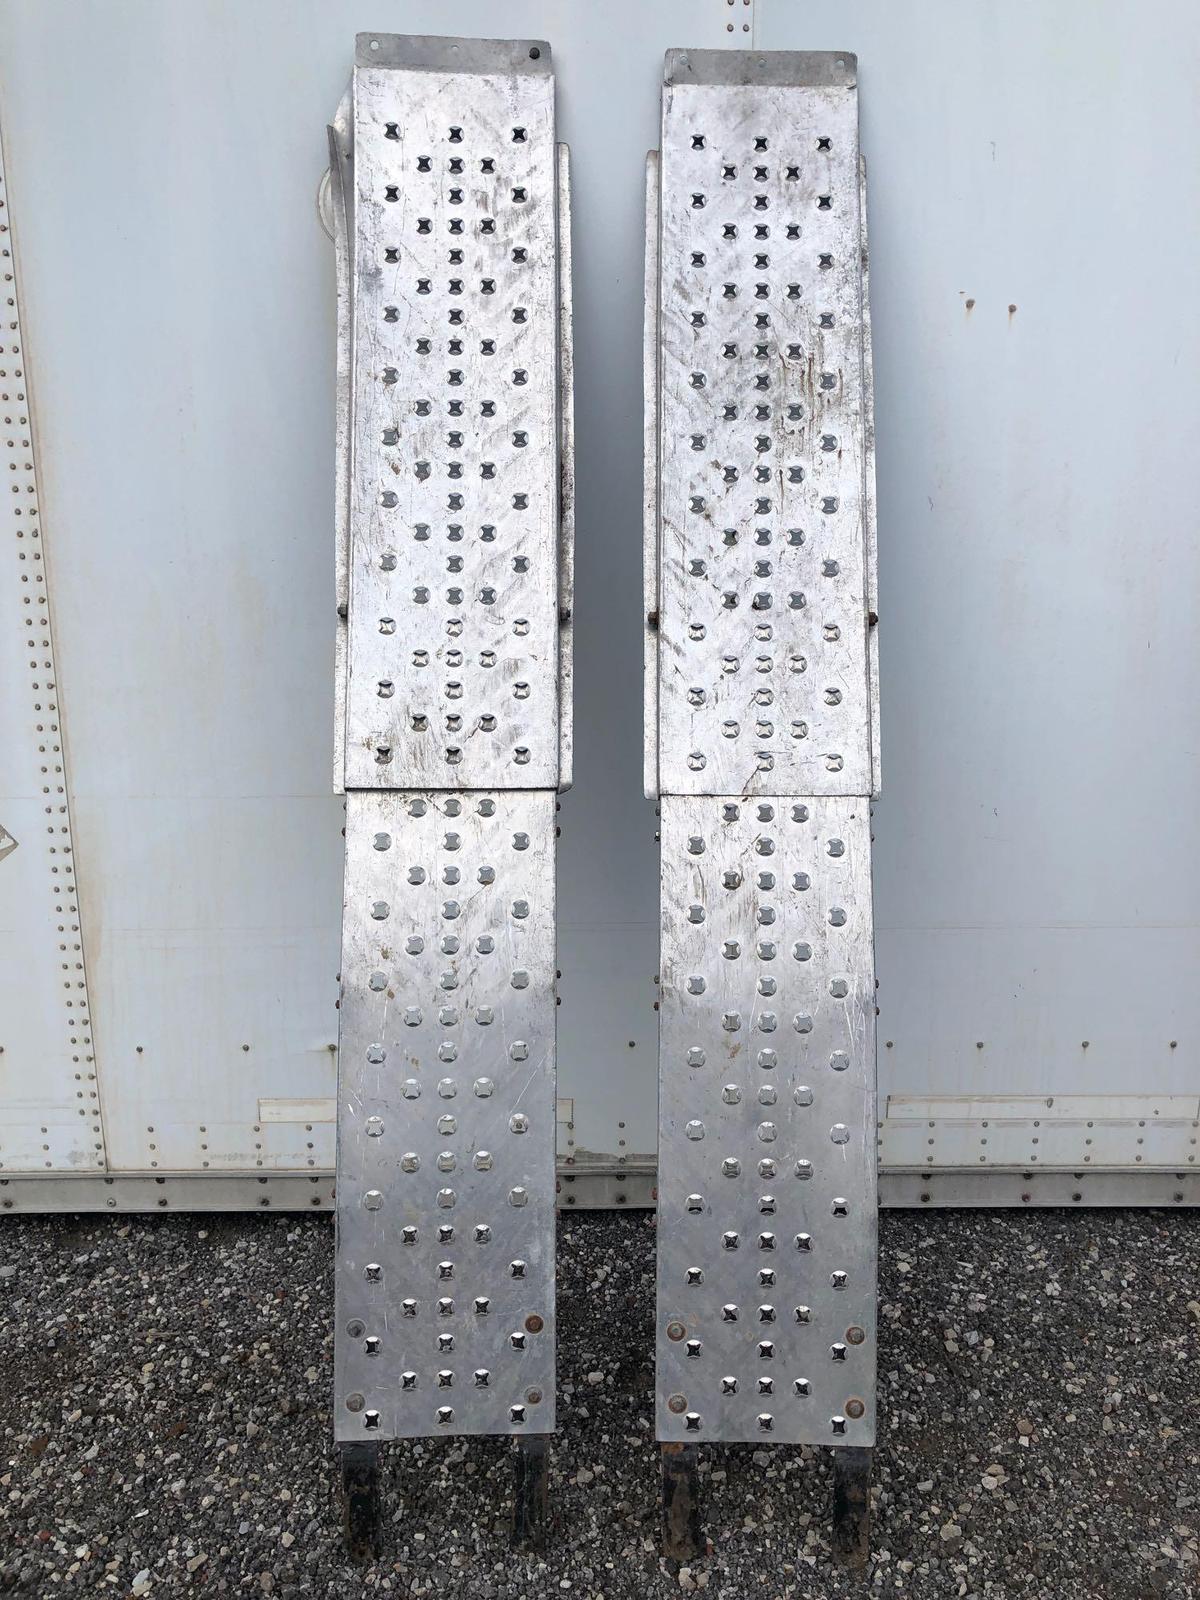 2-Aluminum Ramps